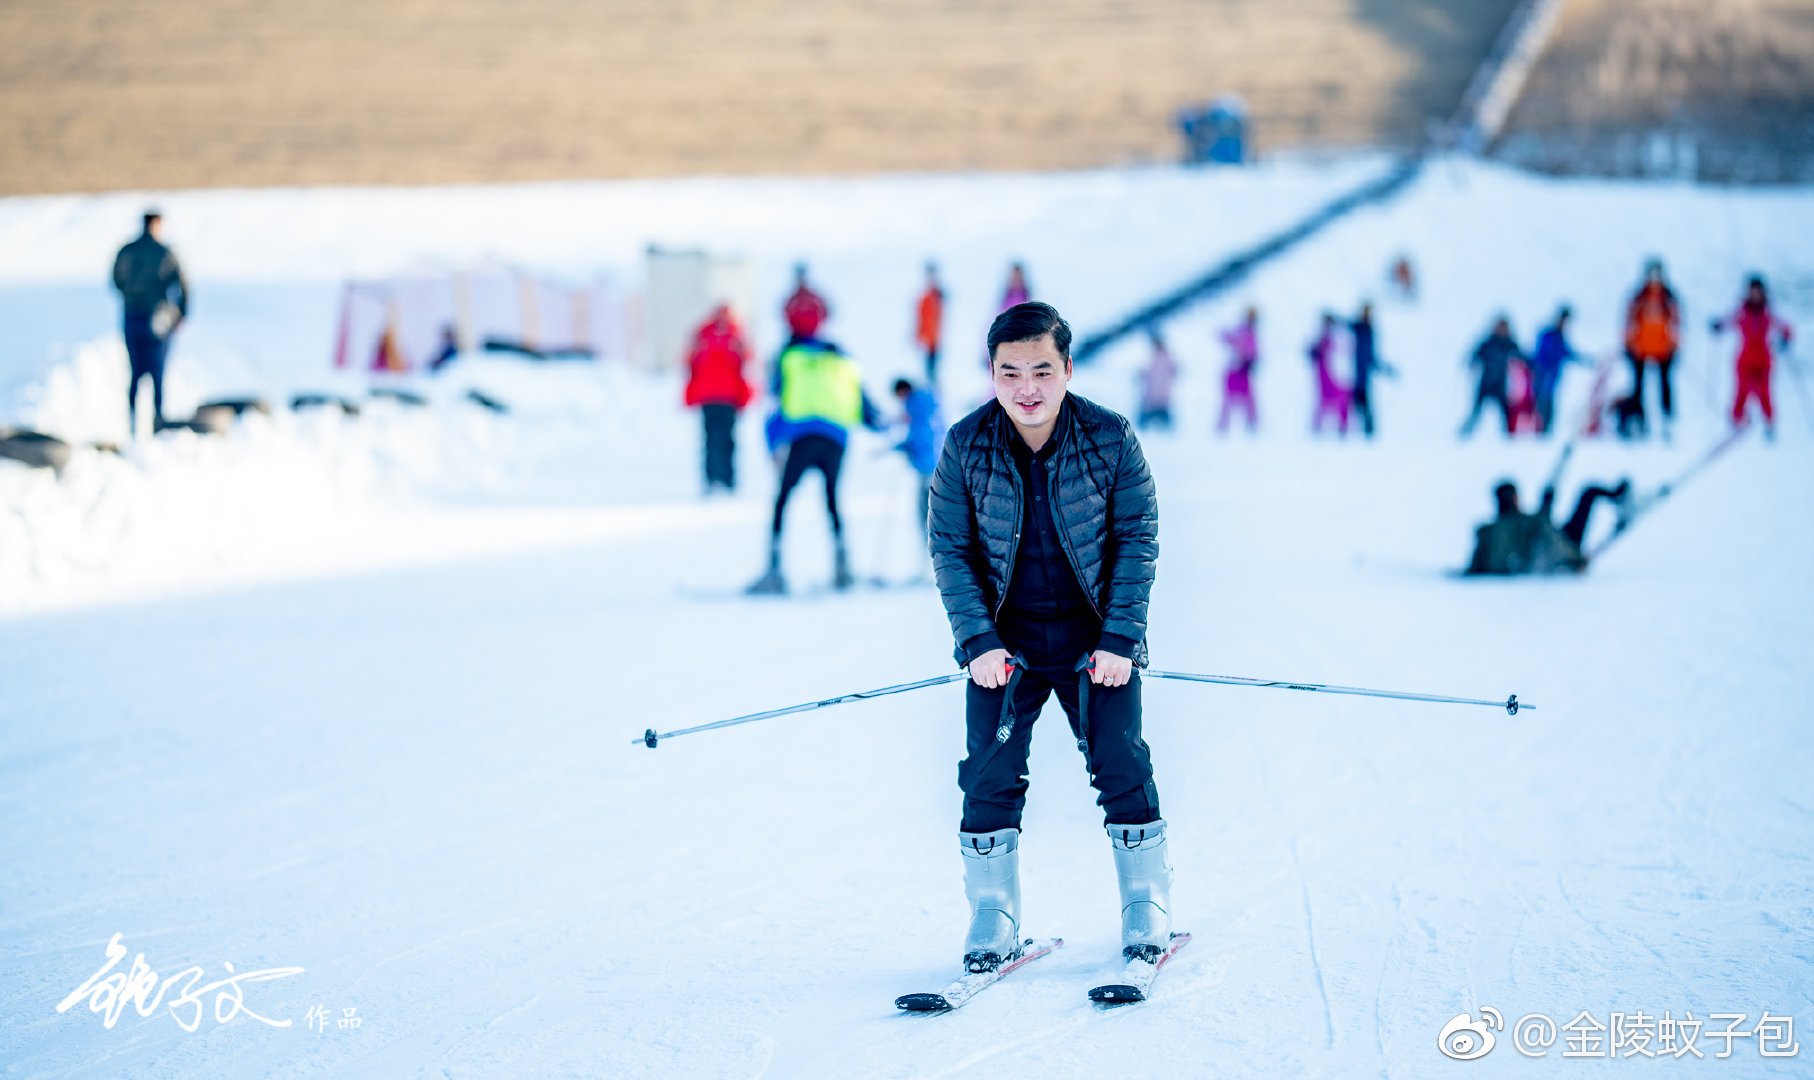 天水青鹃山滑雪场位于天水市平南镇孙集村，雪场占地面积100亩